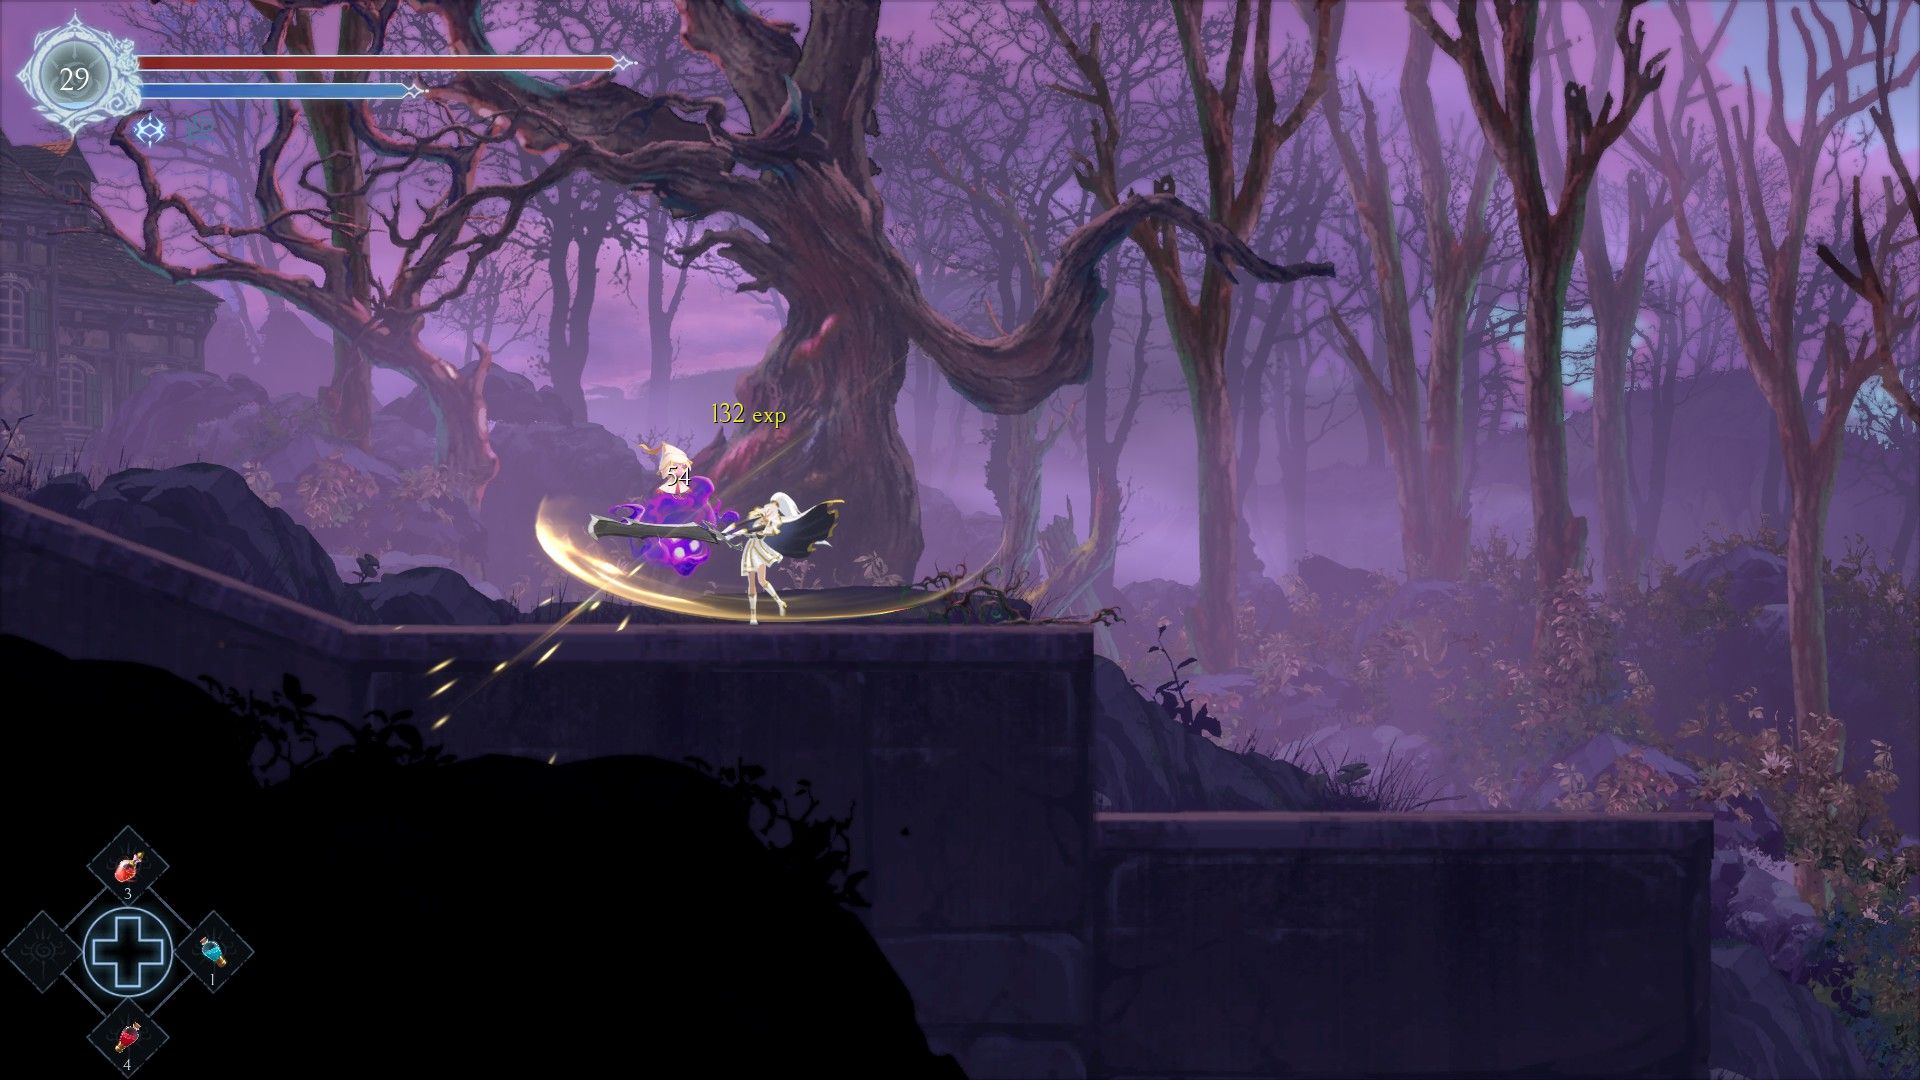 Renee, protagoniste de l'image rémanente, balançant une lourde lame sur un ennemi dans un environnement fantomatique sur fond d'arbres morts.